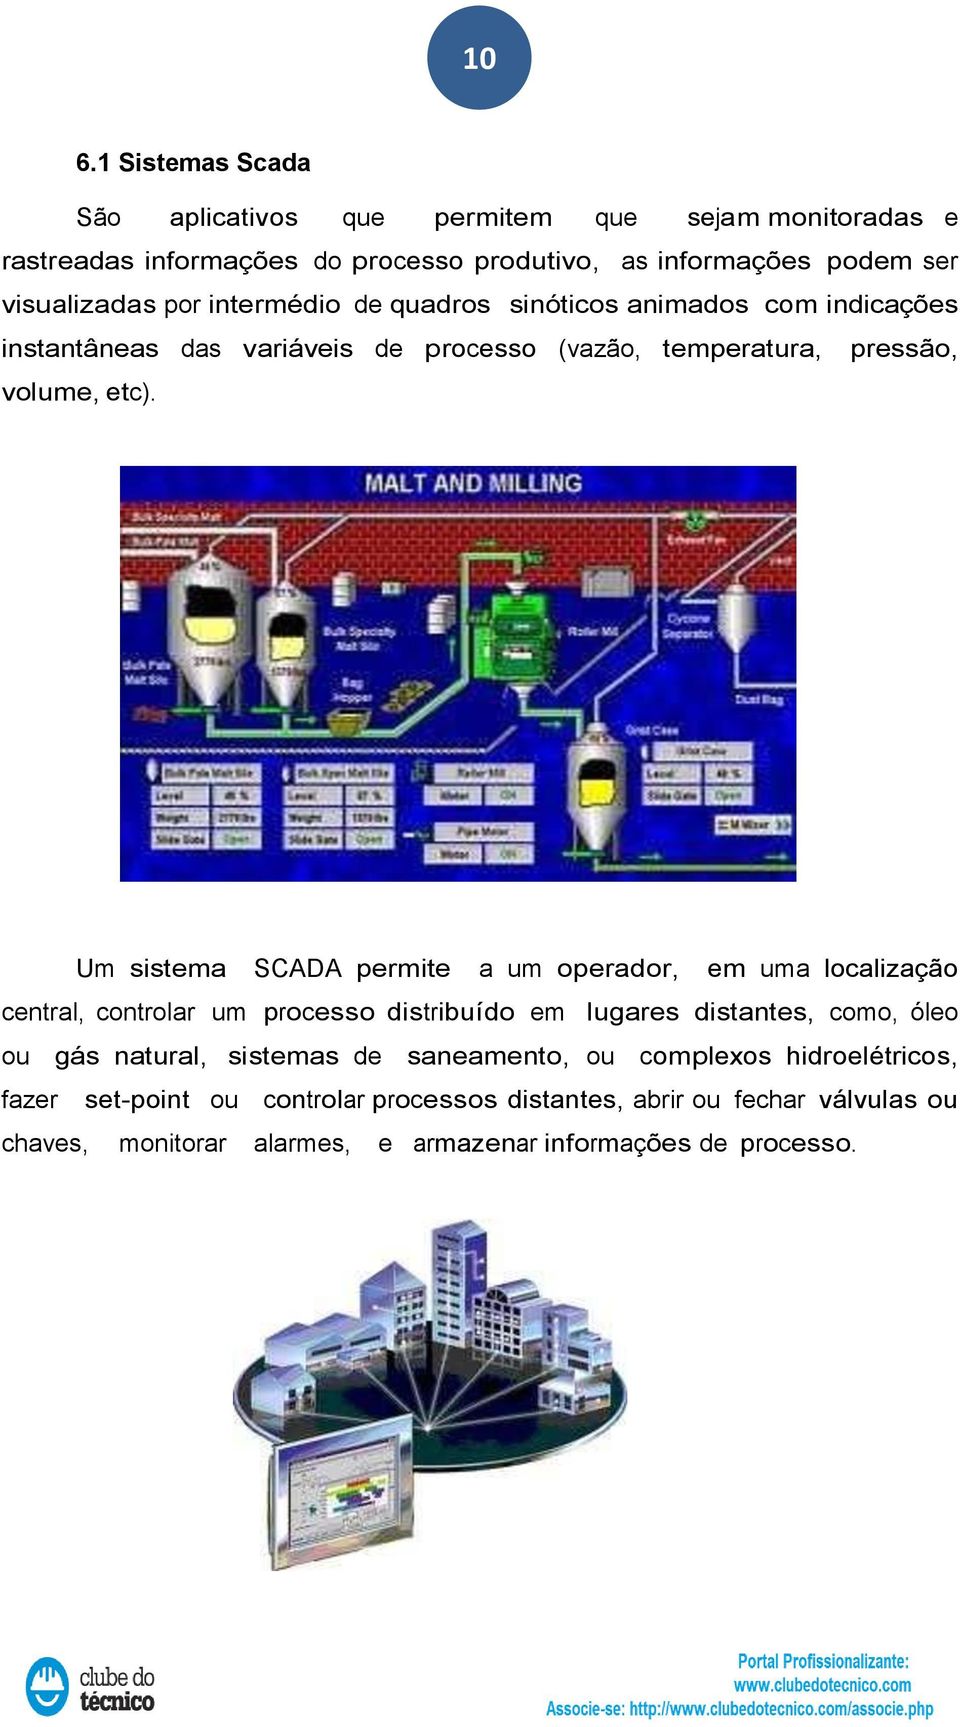 Um sistema SCADA permite a um operador, em uma localização central, controlar um processo distribuído em lugares distantes, como, óleo ou gás natural, sistemas